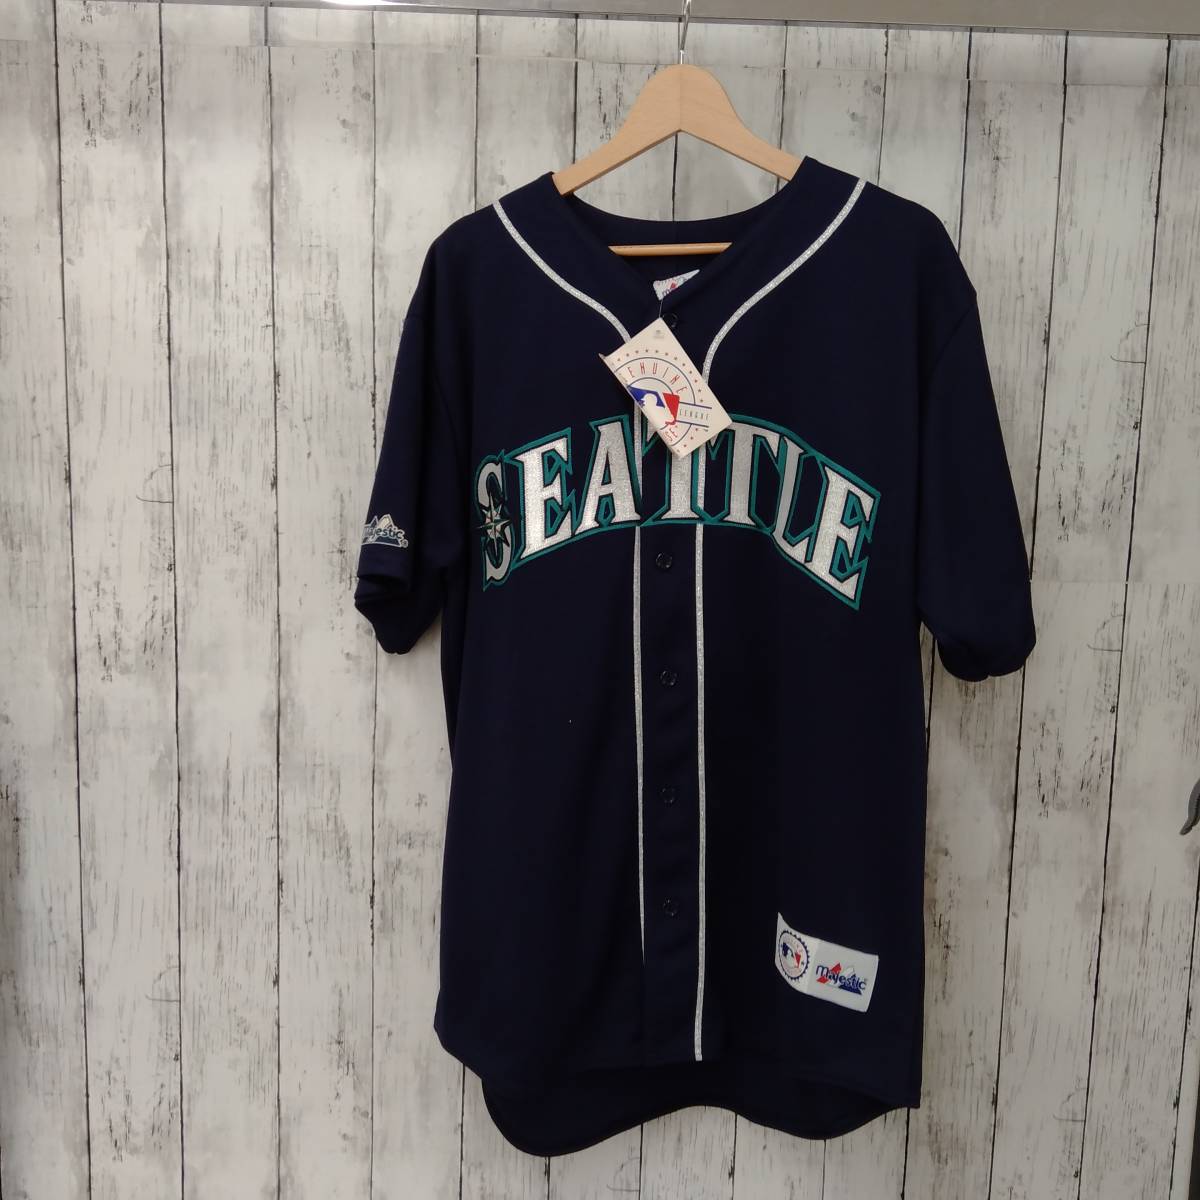 USA製 SEATTLE イチロー ユニフォーム ゲームシャツ メジャーリーグ ベースボール